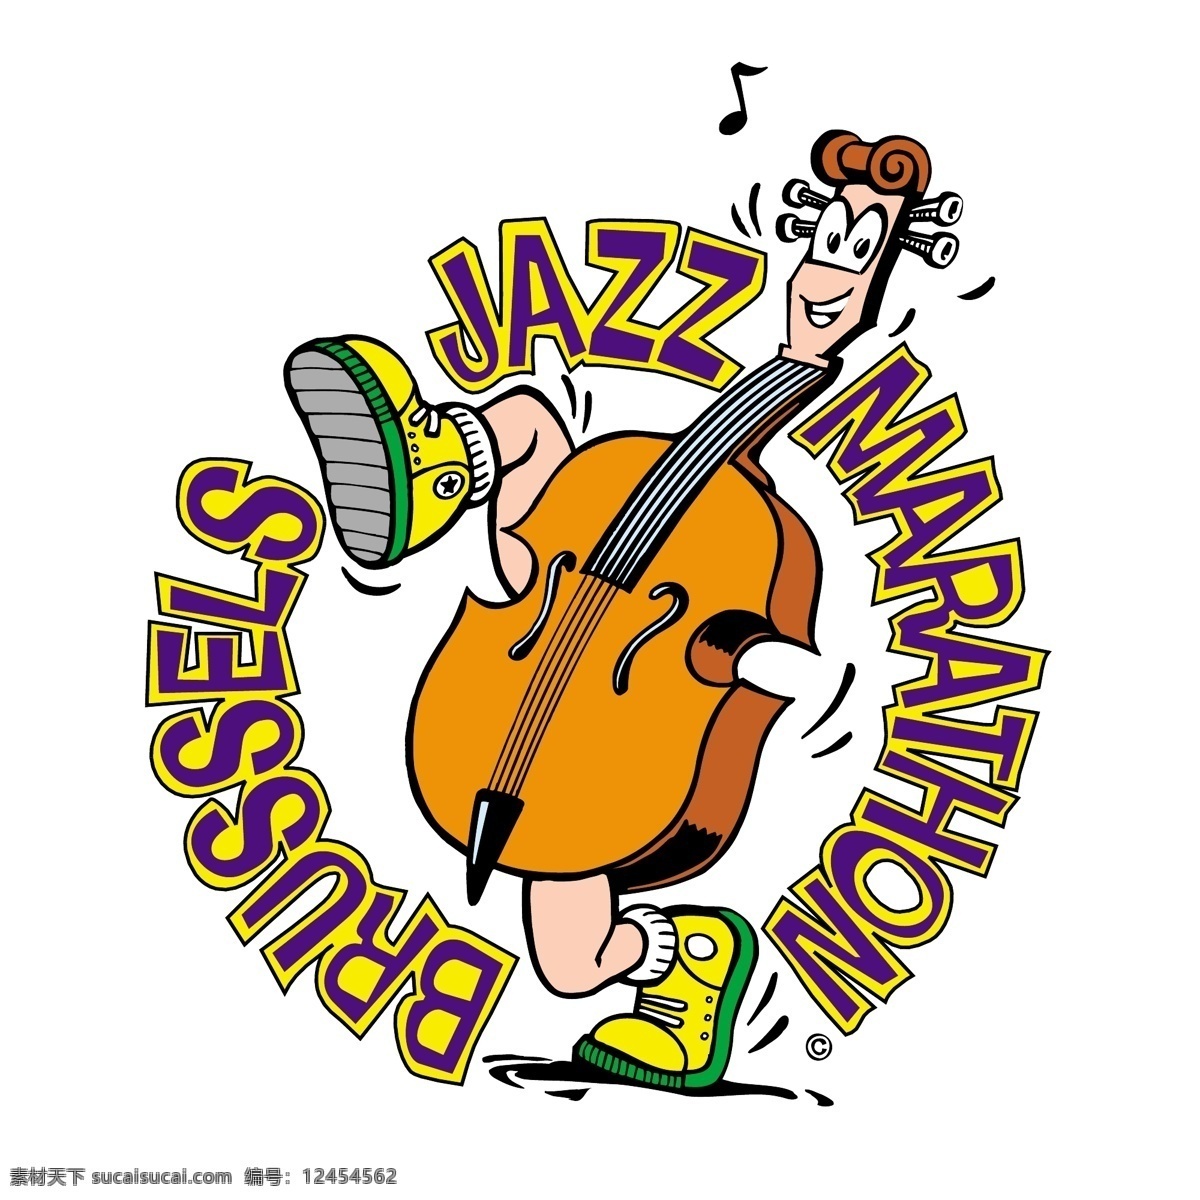 布鲁塞尔 爵士音乐 马拉松 自由 爵士 标志 音乐 psd源文件 logo设计